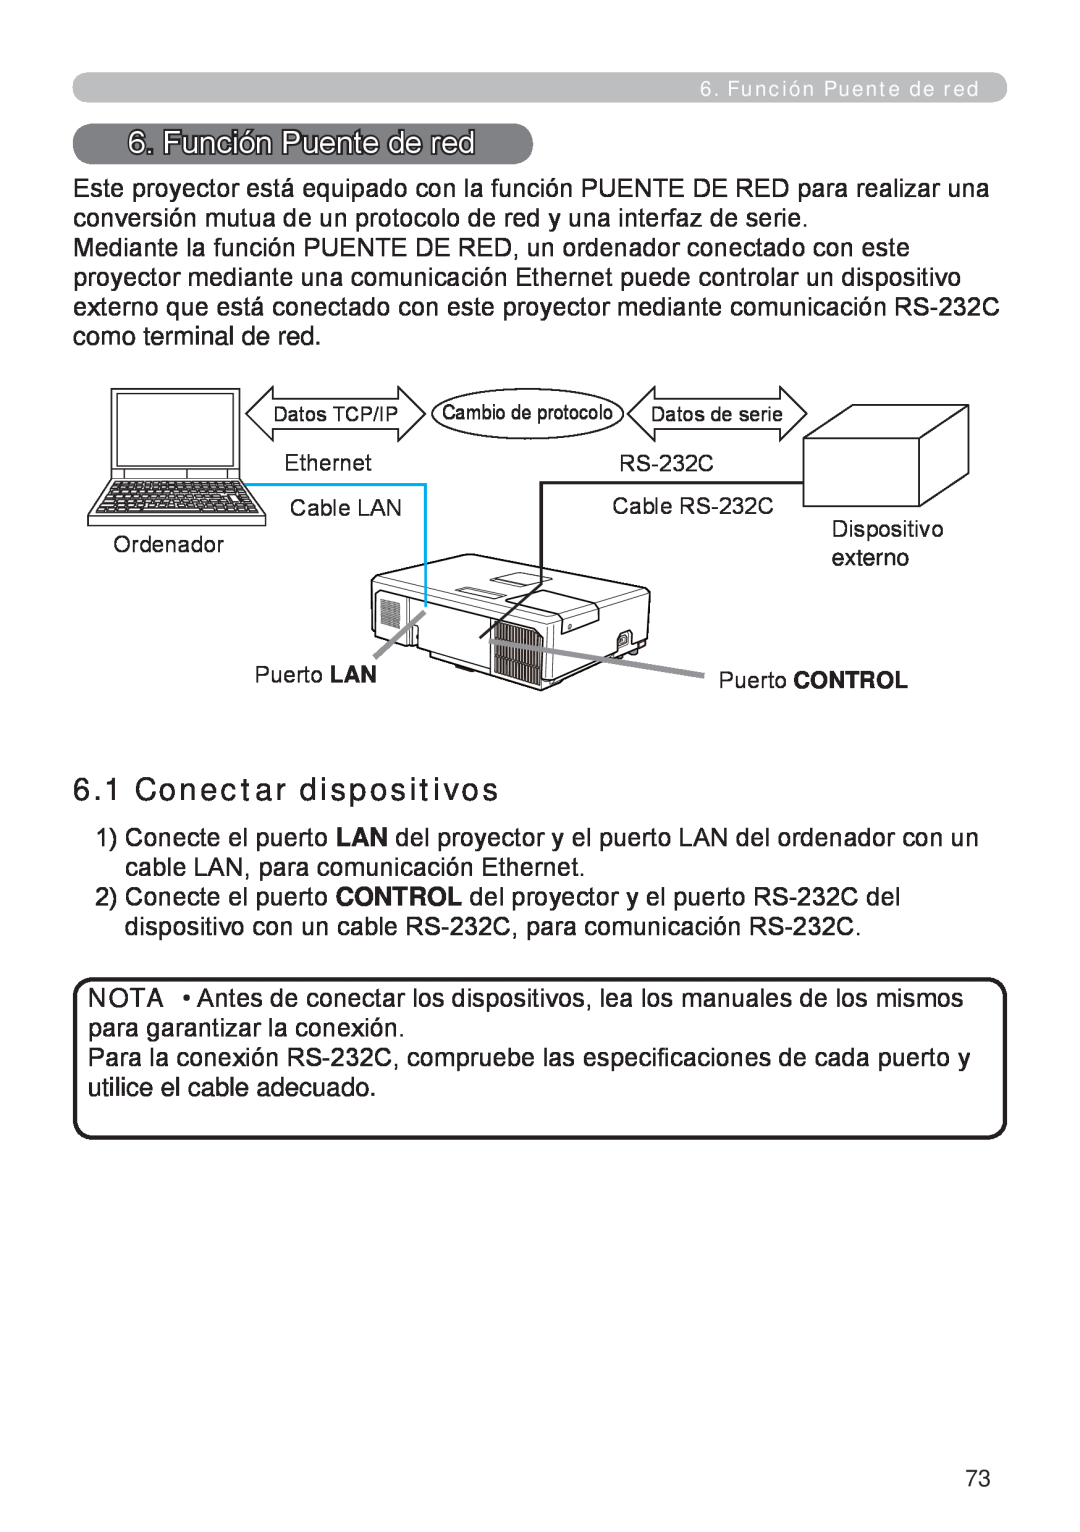 InFocus W60, W61 manual Función Puente de red, Conectar dispositivos 